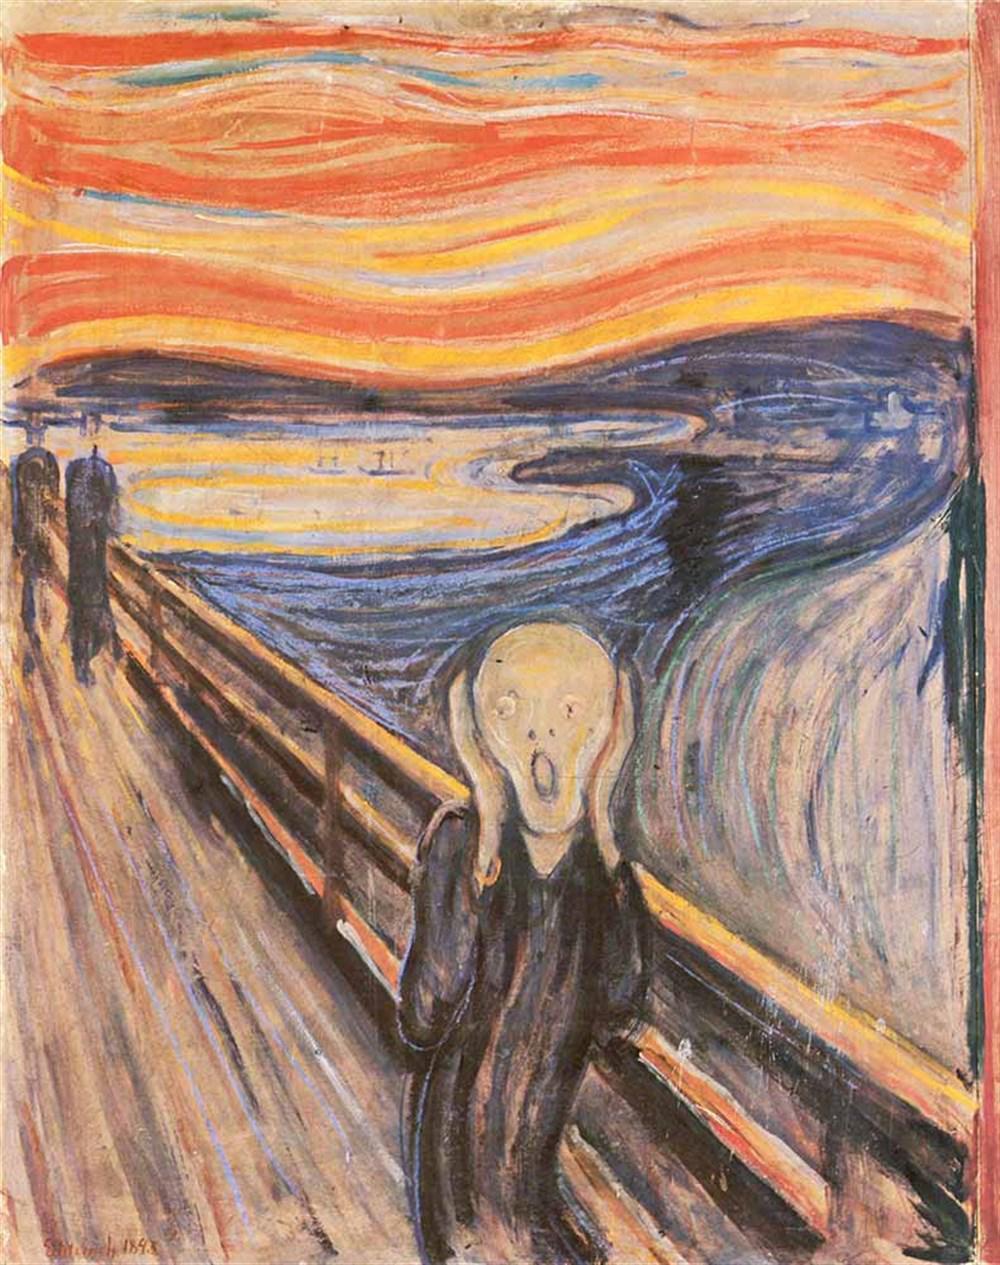 Roman Abramovichten Çığlık tablosuna 120 milyon Dolar